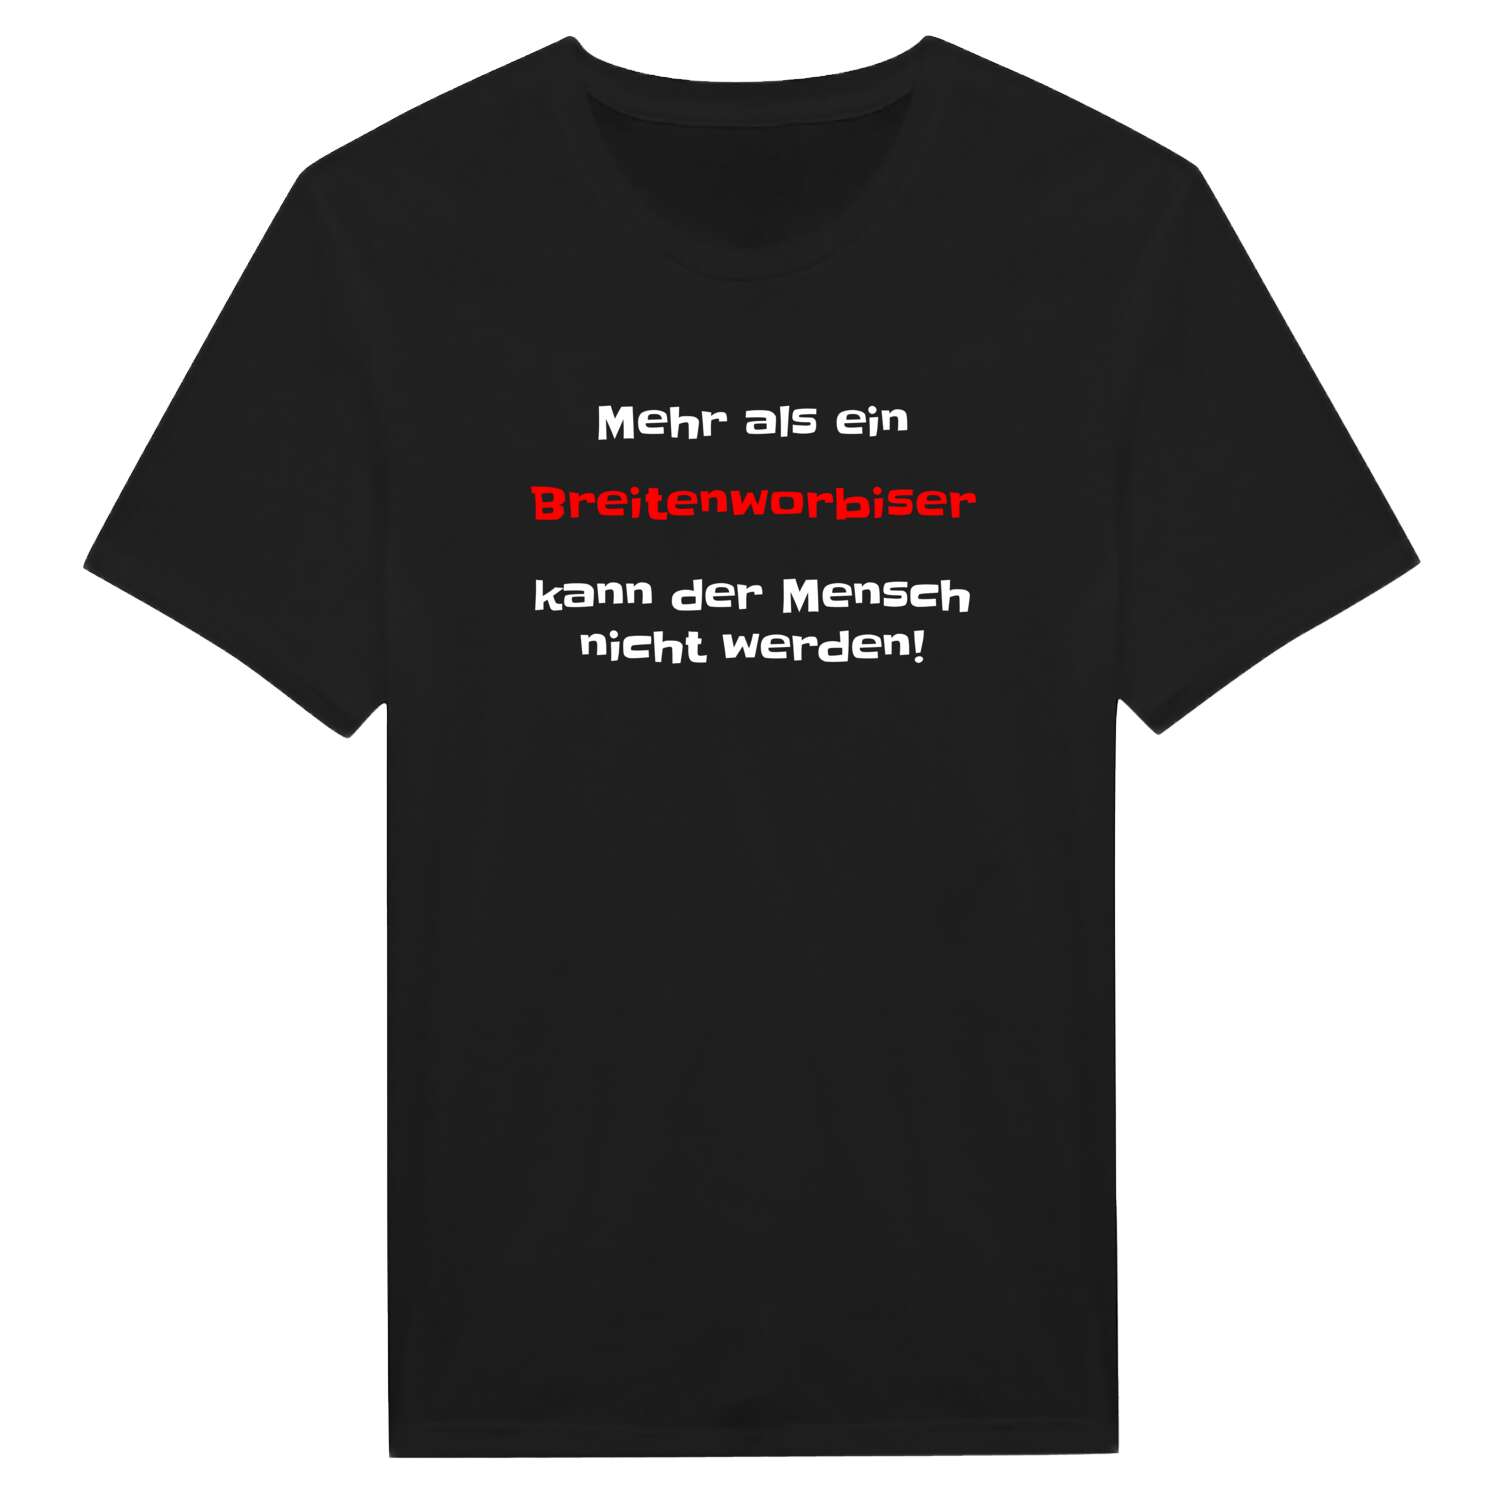 Breitenworbis T-Shirt »Mehr als ein«